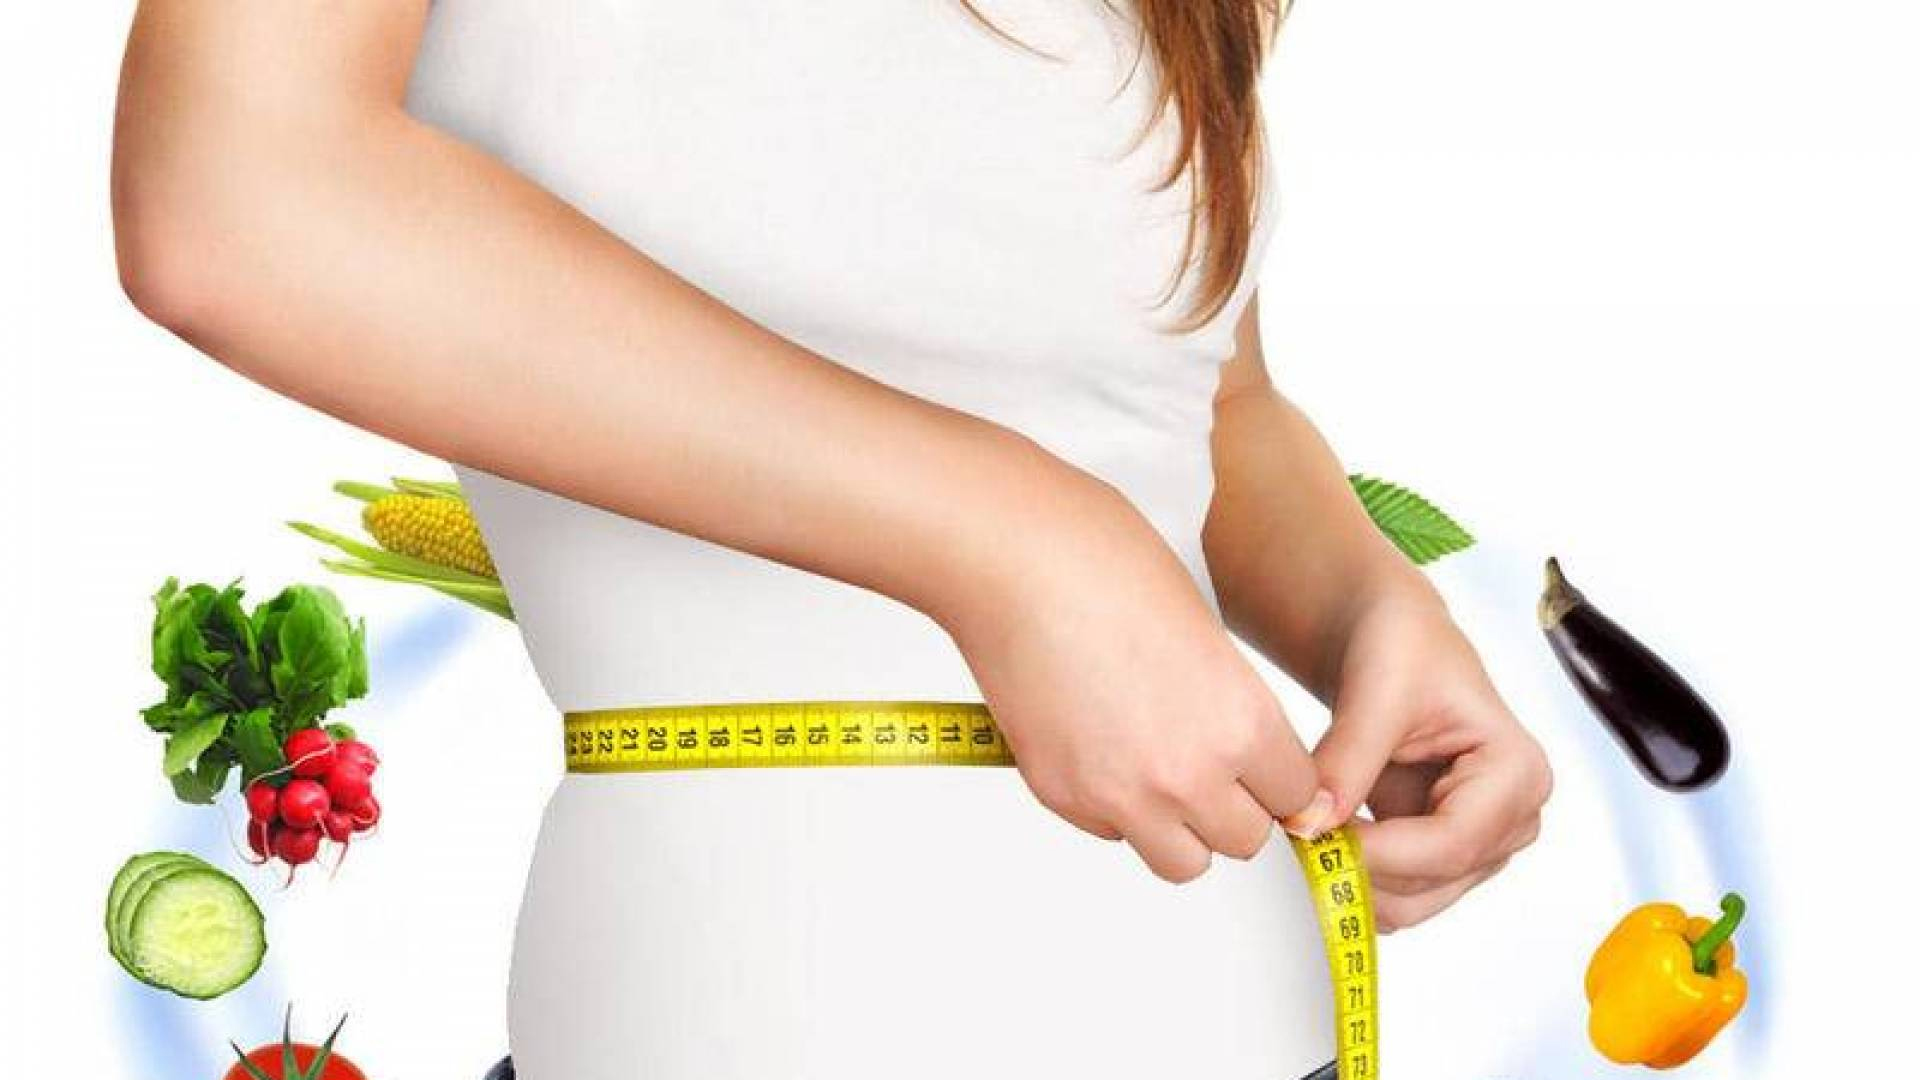 طريقة لإنقاص الوزن بدون الحرمان من الازانيا وآلايس كريم.. اعرف التفاصيل